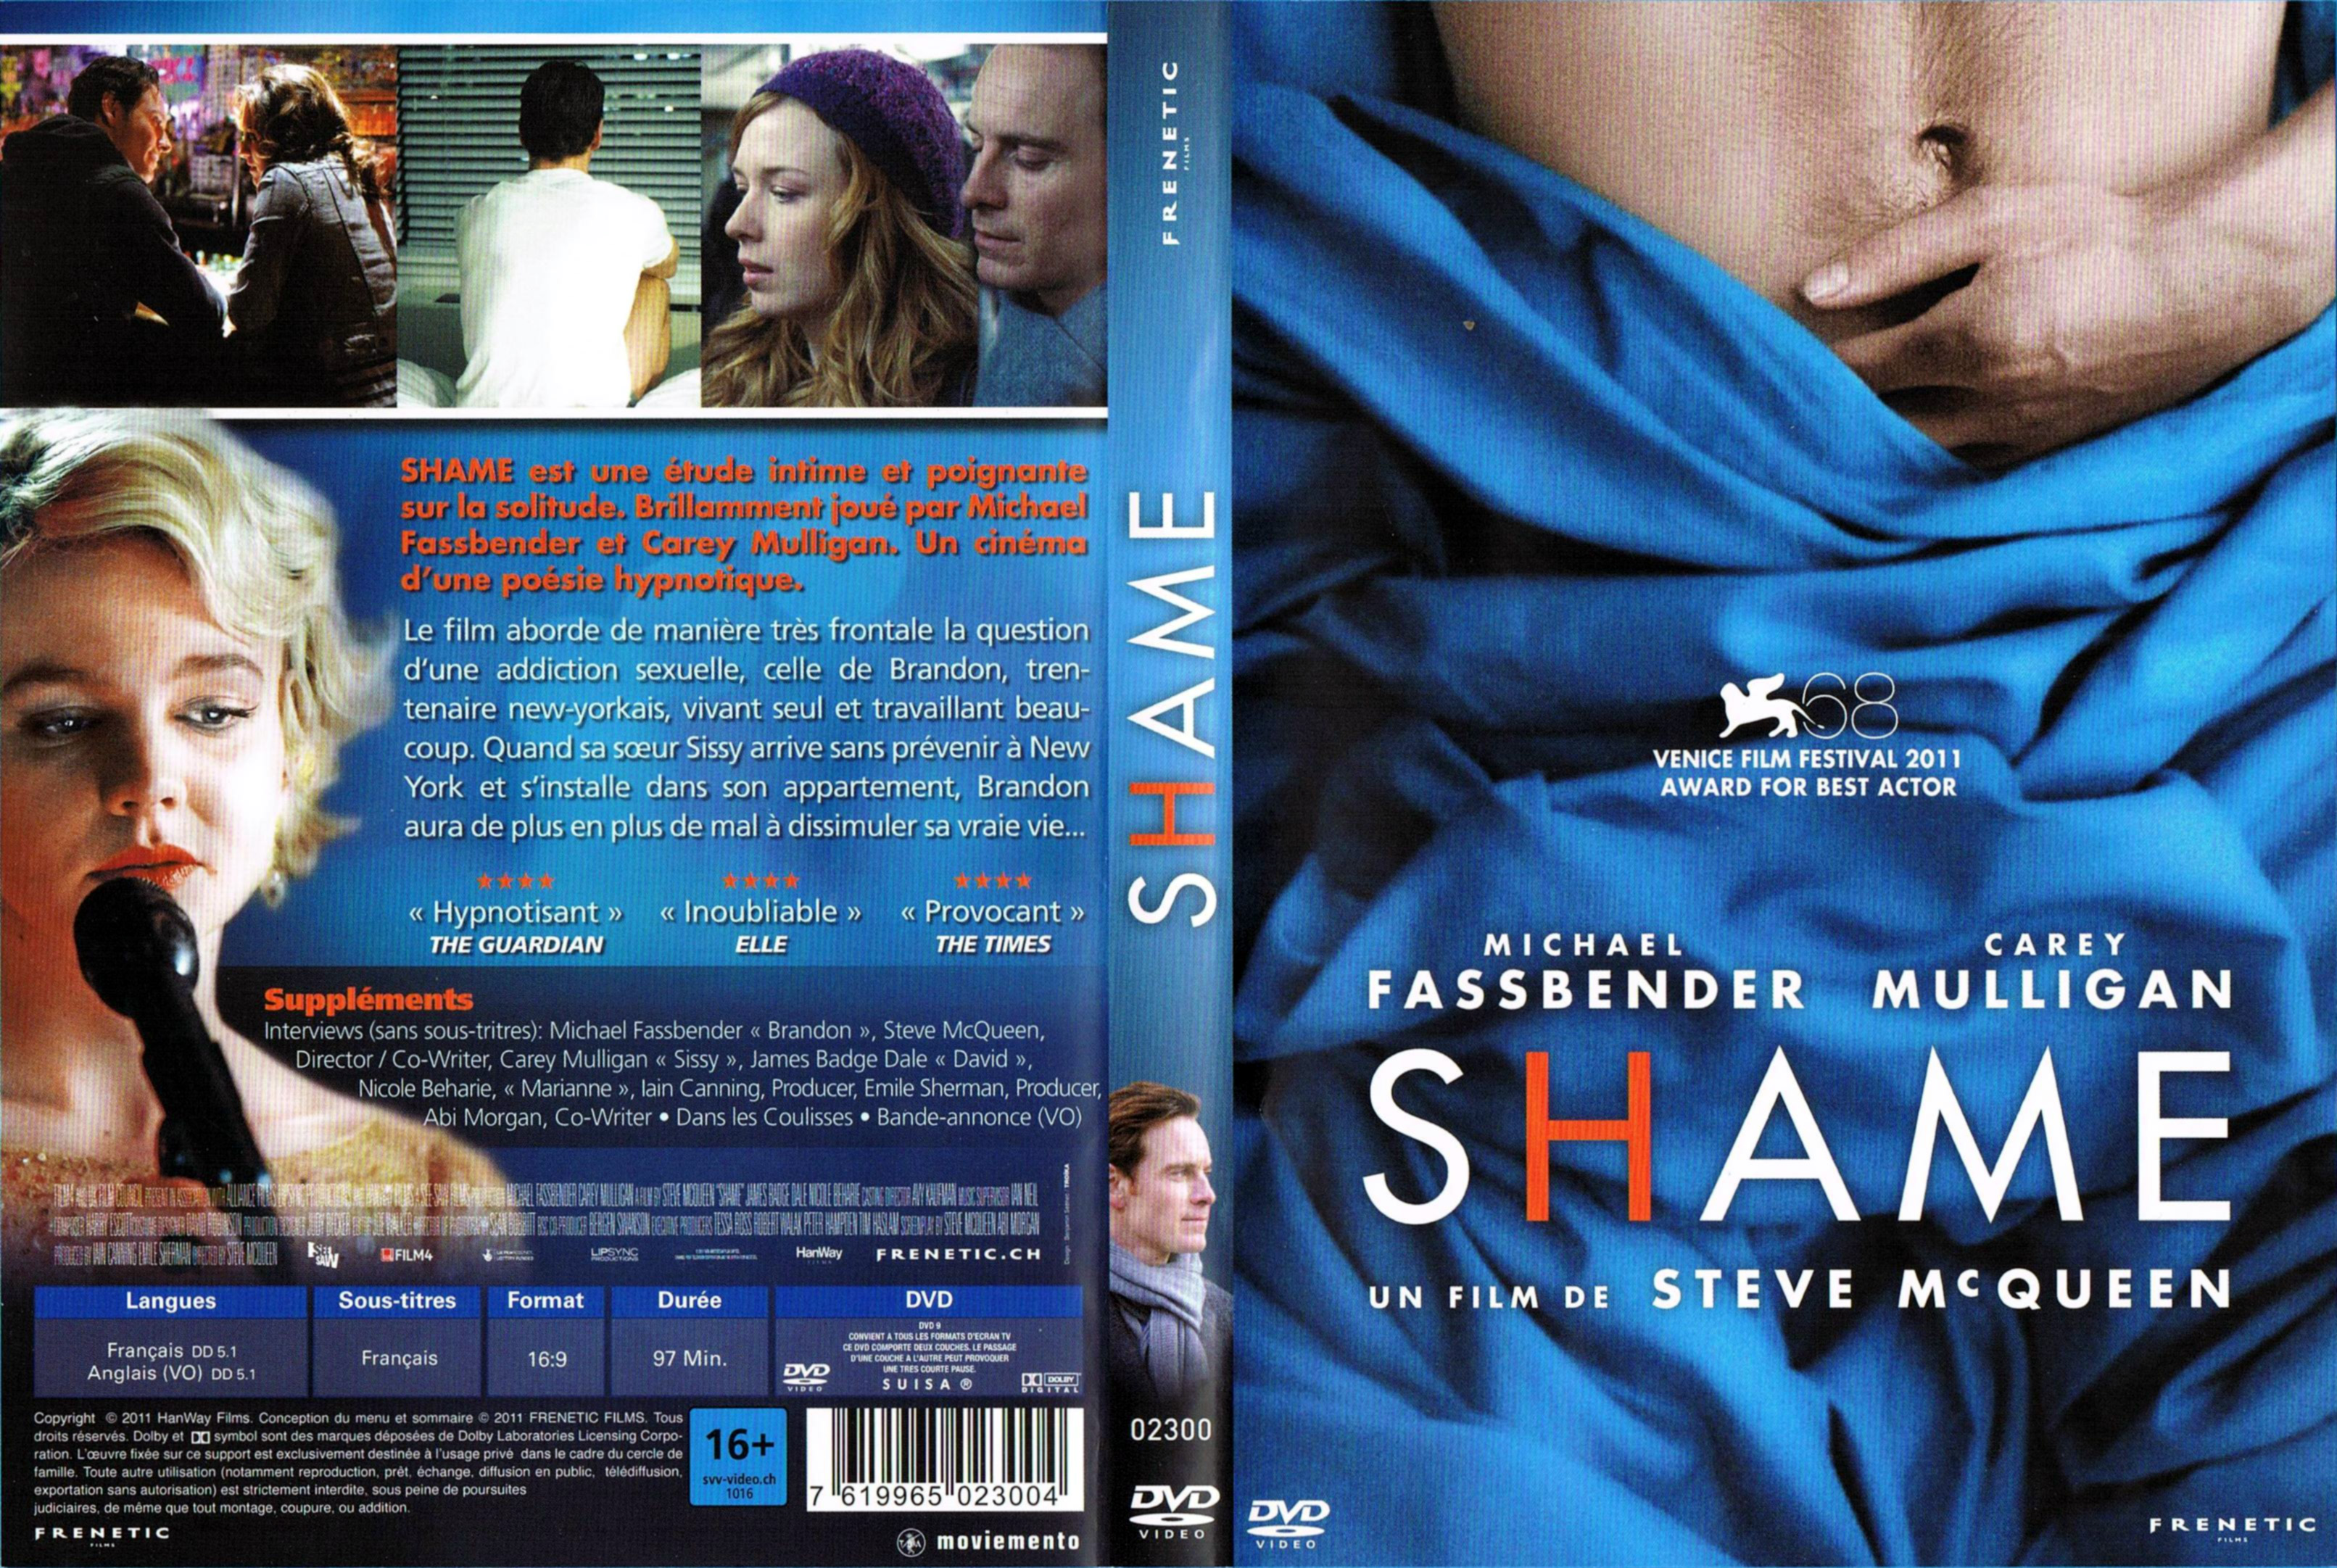 Jaquette DVD Shame v2